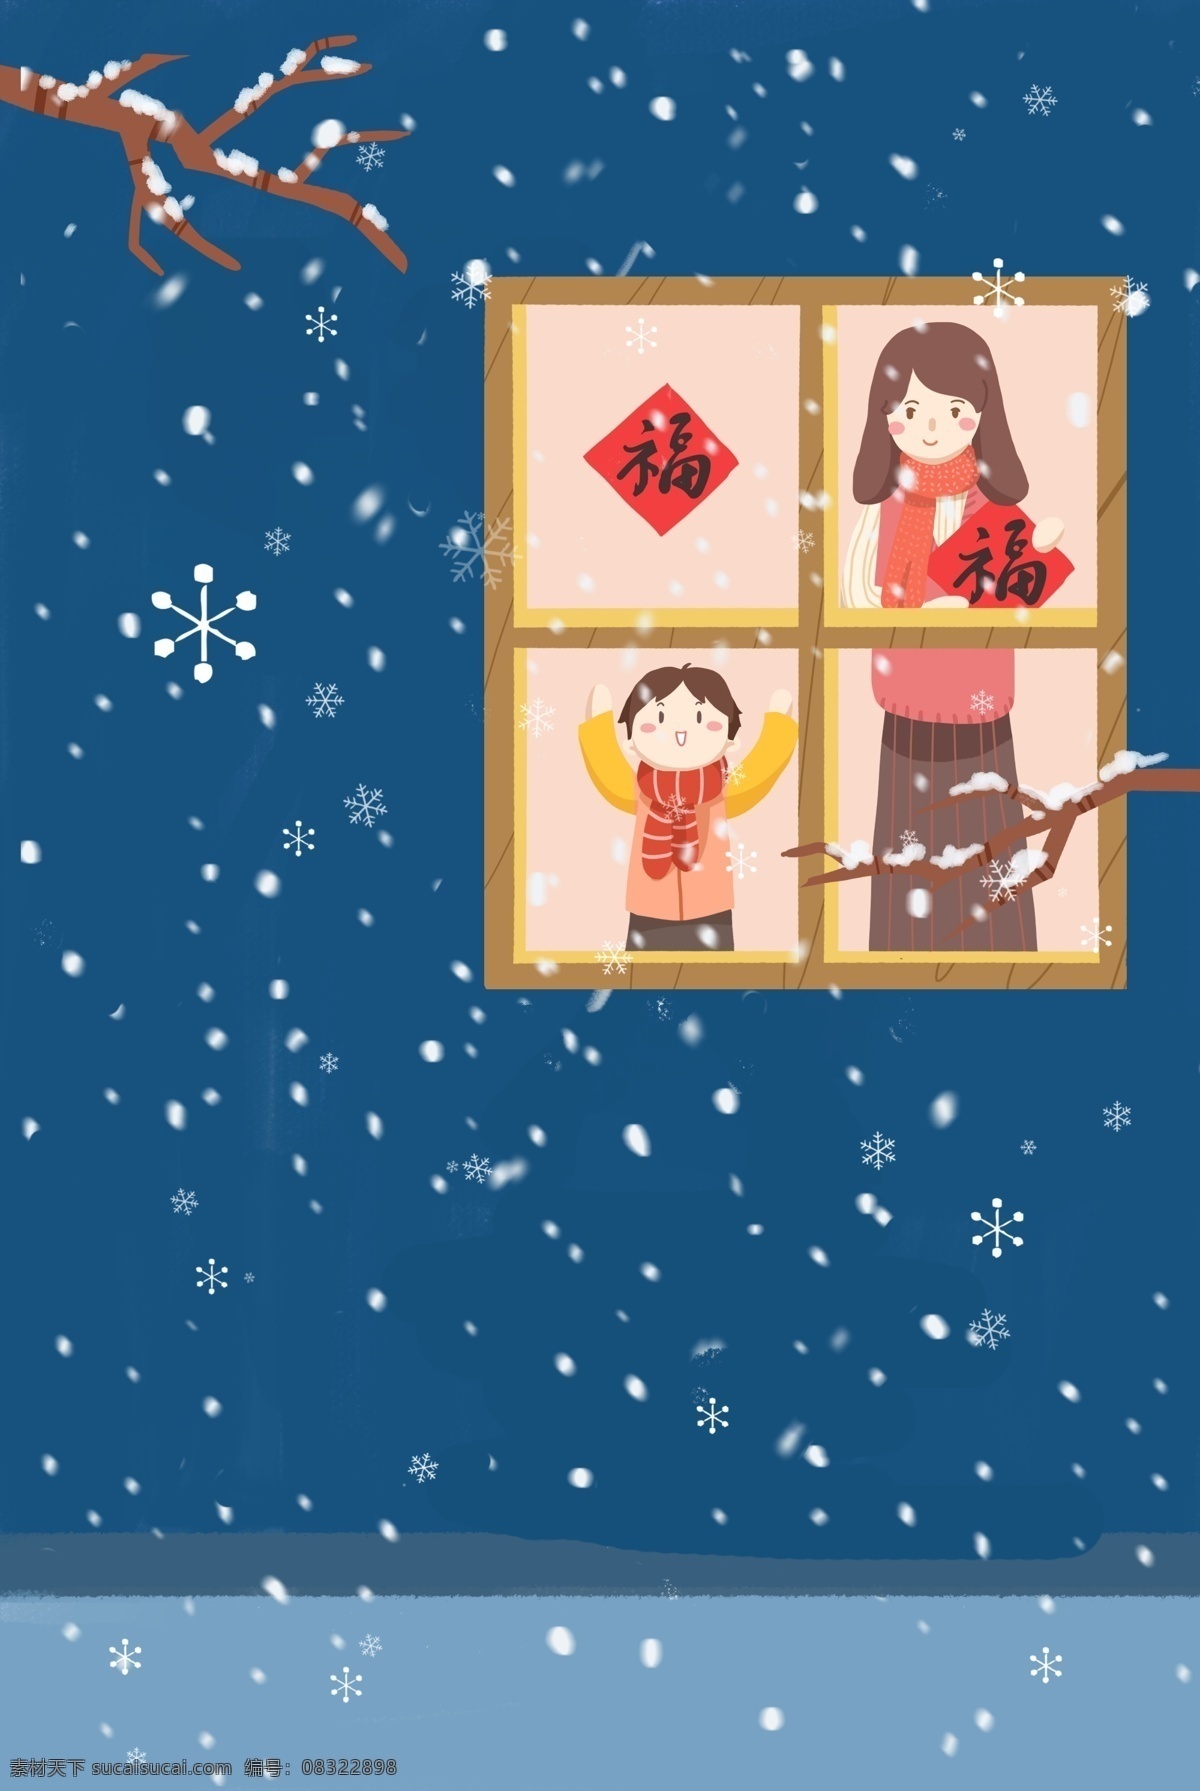 春节 窗前 贴 福字 温馨 家人 海报 新年 2019 人物 雪景 插画风 促销海报